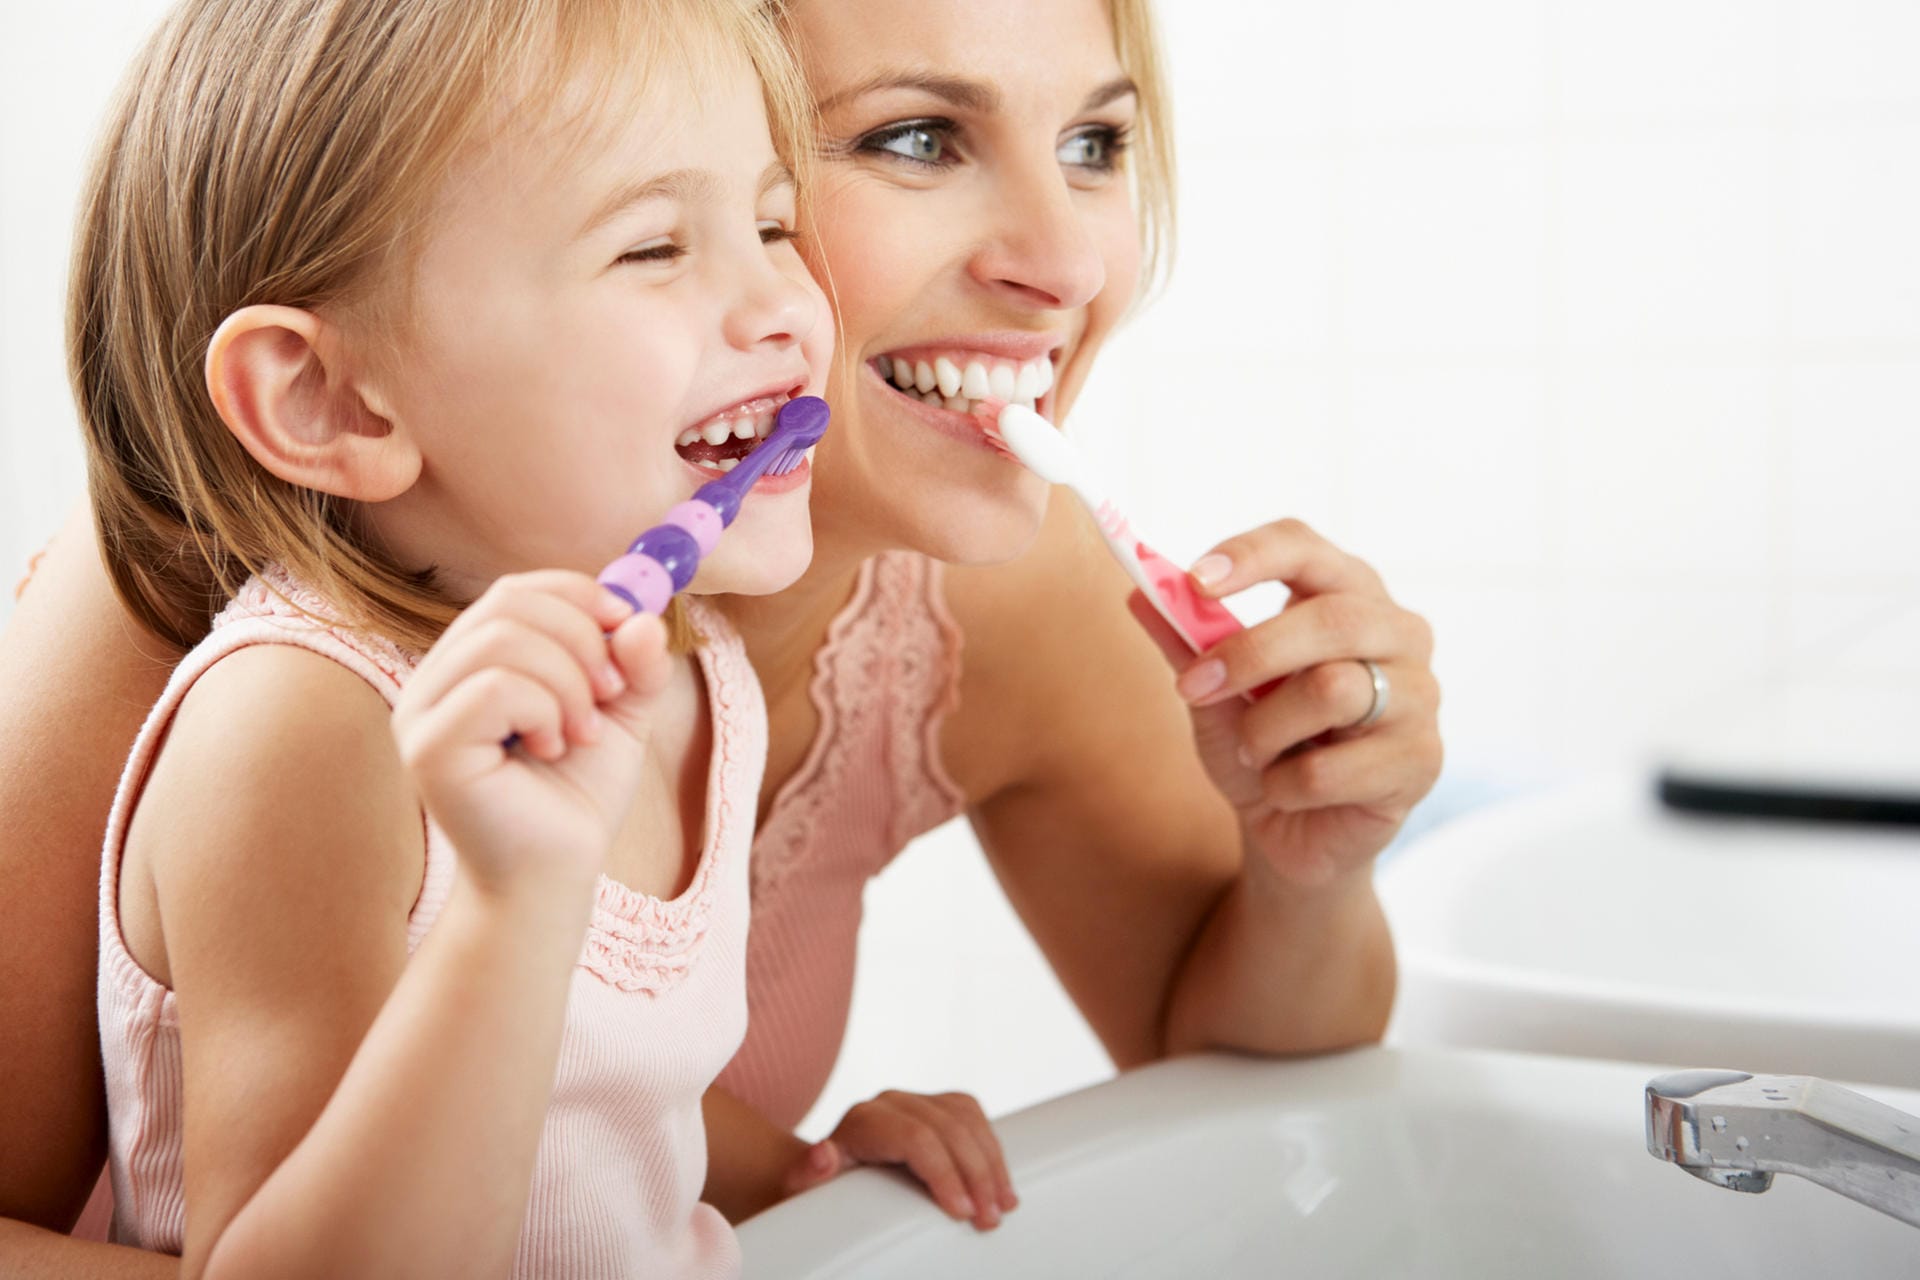 Es ist wichtig, Kinder möglichst früh an das Zähneputzen zu gewöhnen. Es sollte eine Gewohnheit werden und mit zum Alltag gehören, zweimal am Tag die Zähne zu pflegen.